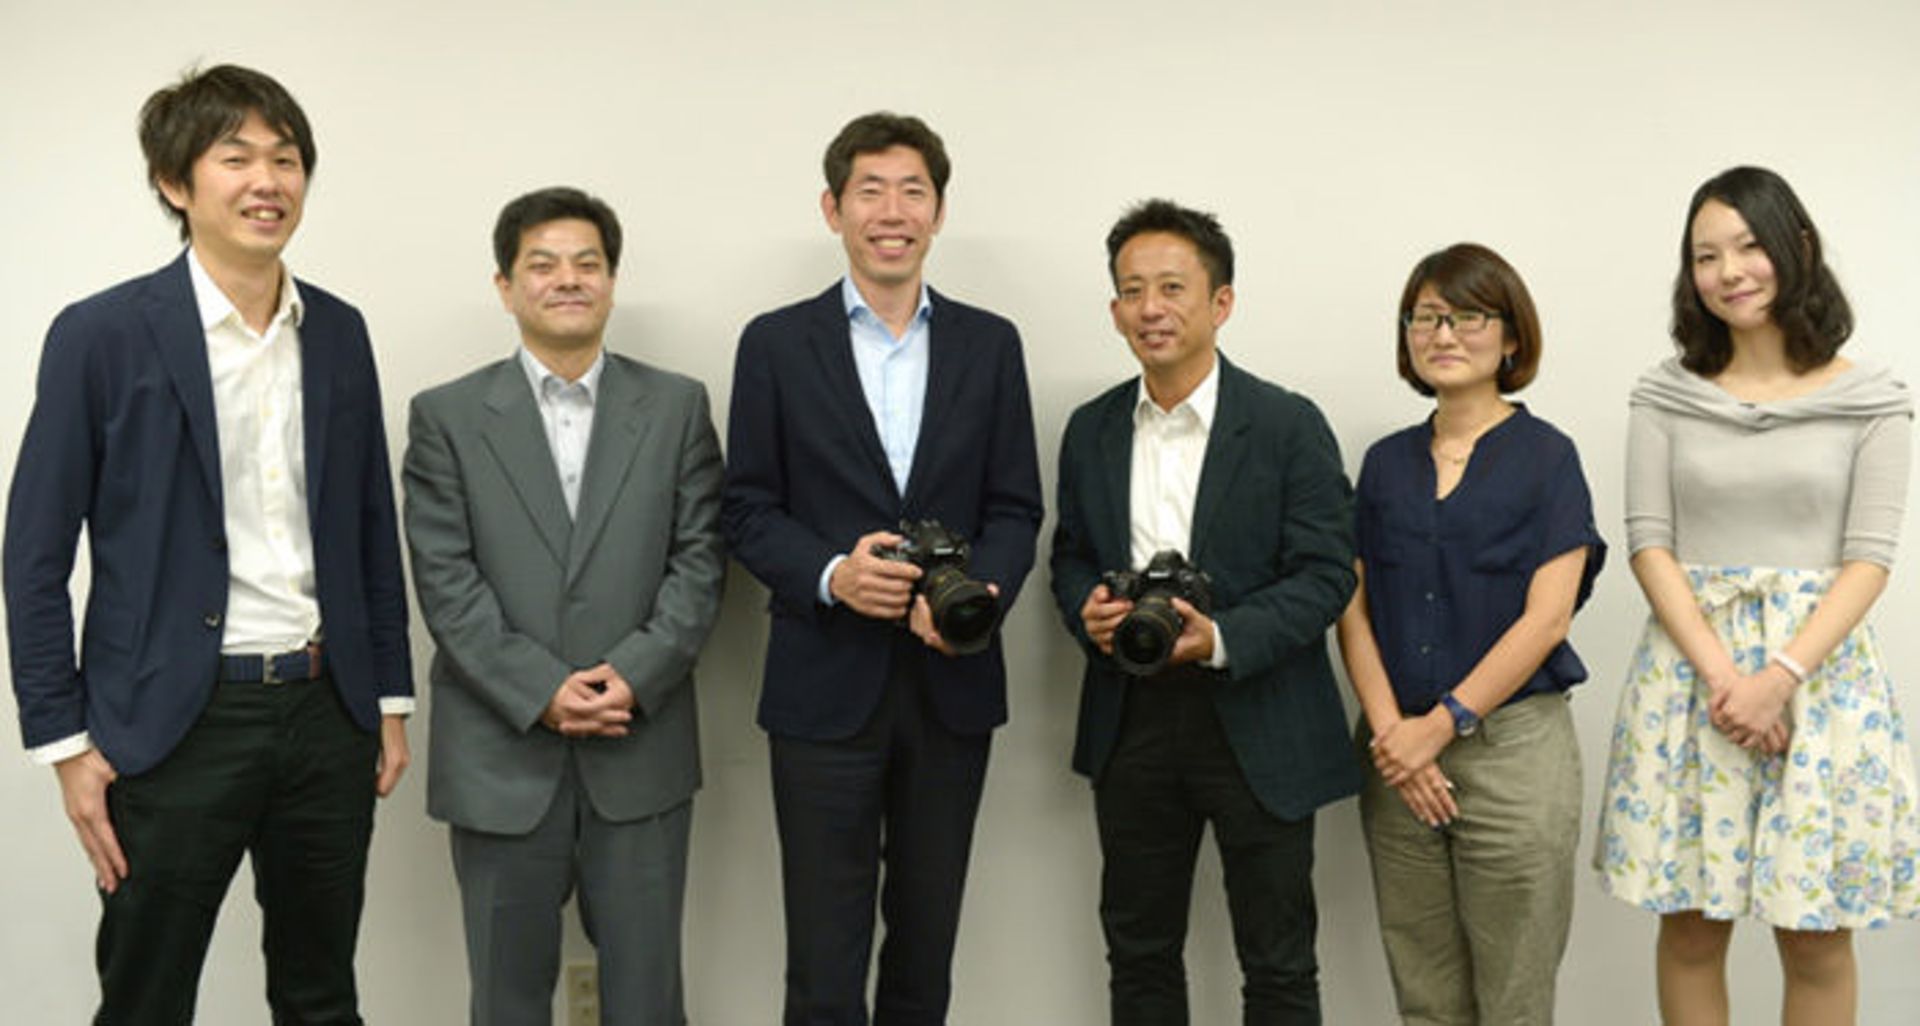 اعضای تیم نیکون  / Nikon D850 team